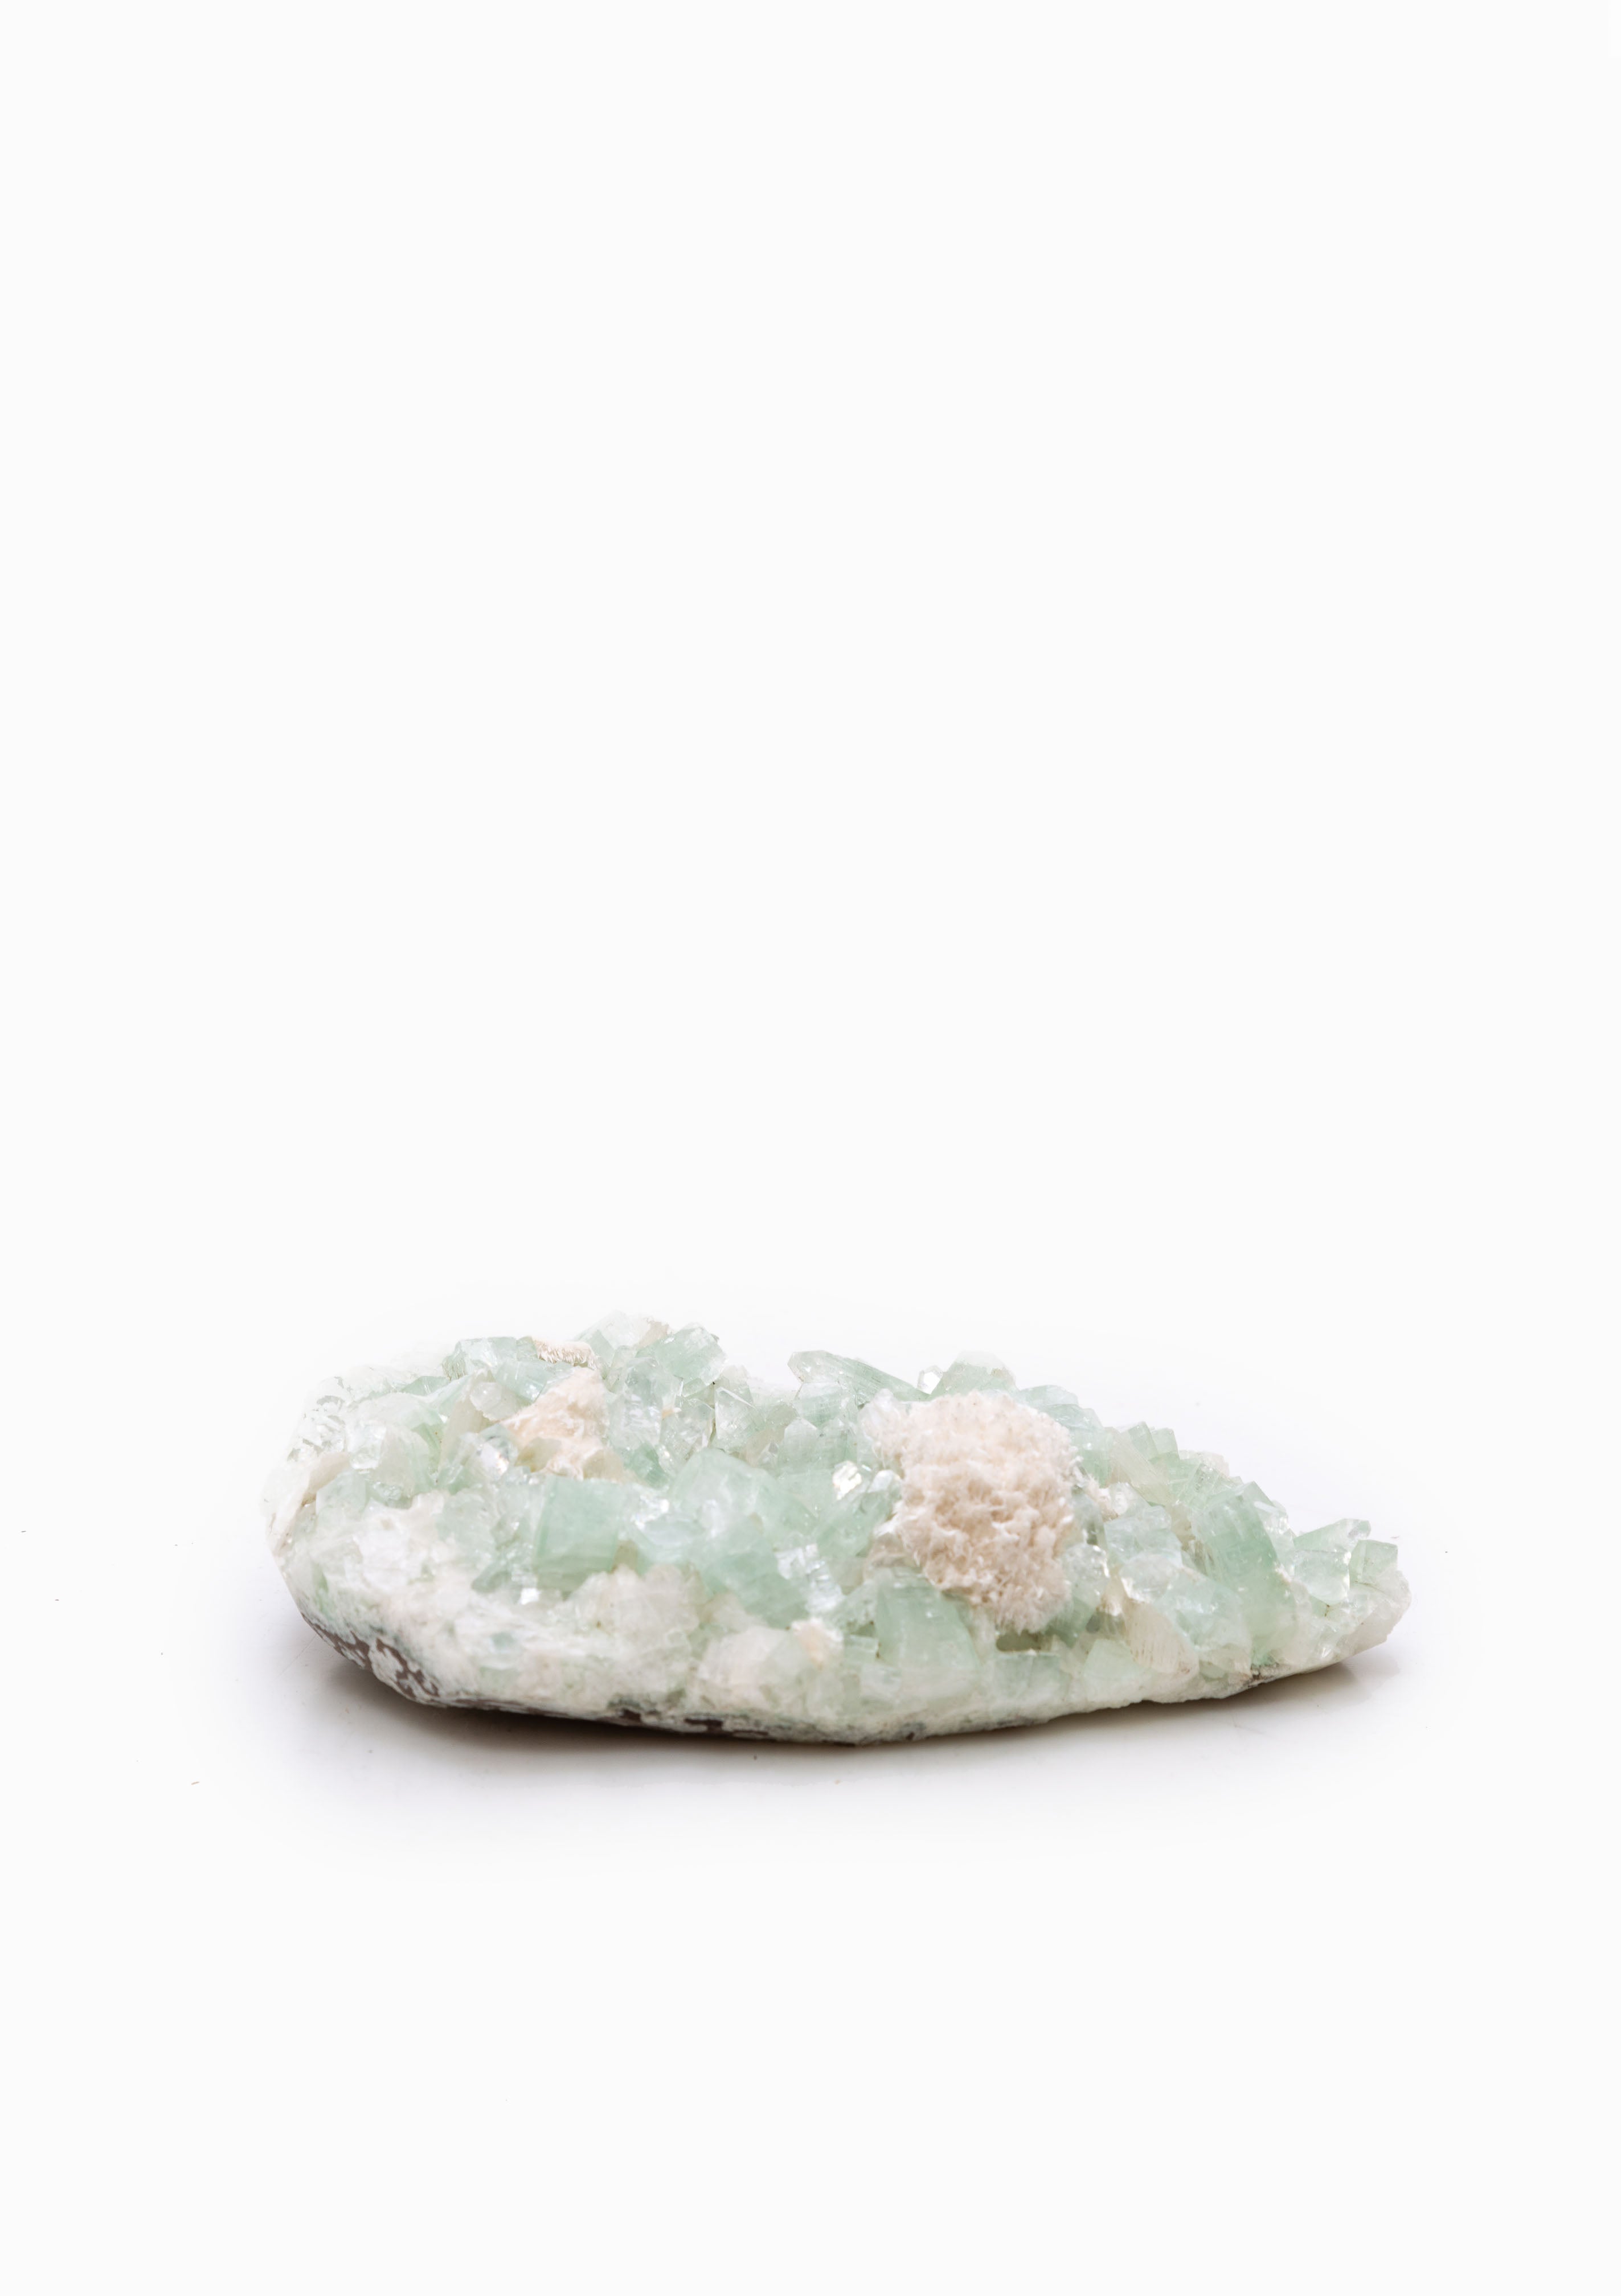 Green Apophyllite Crystal 4 | White Mordenite